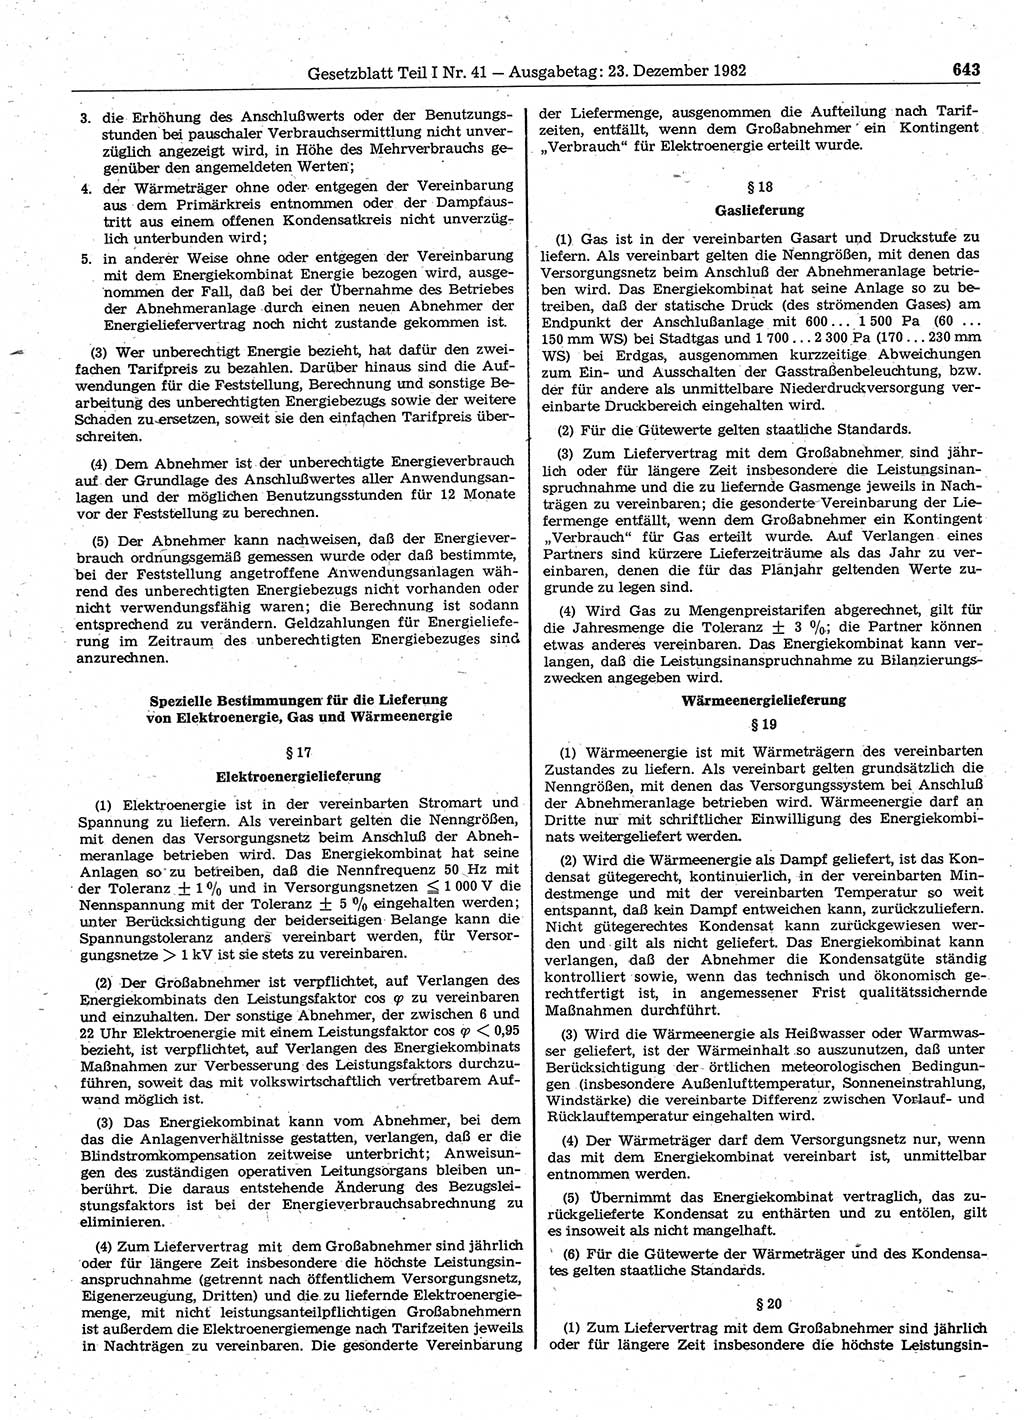 Gesetzblatt (GBl.) der Deutschen Demokratischen Republik (DDR) Teil Ⅰ 1982, Seite 643 (GBl. DDR Ⅰ 1982, S. 643)